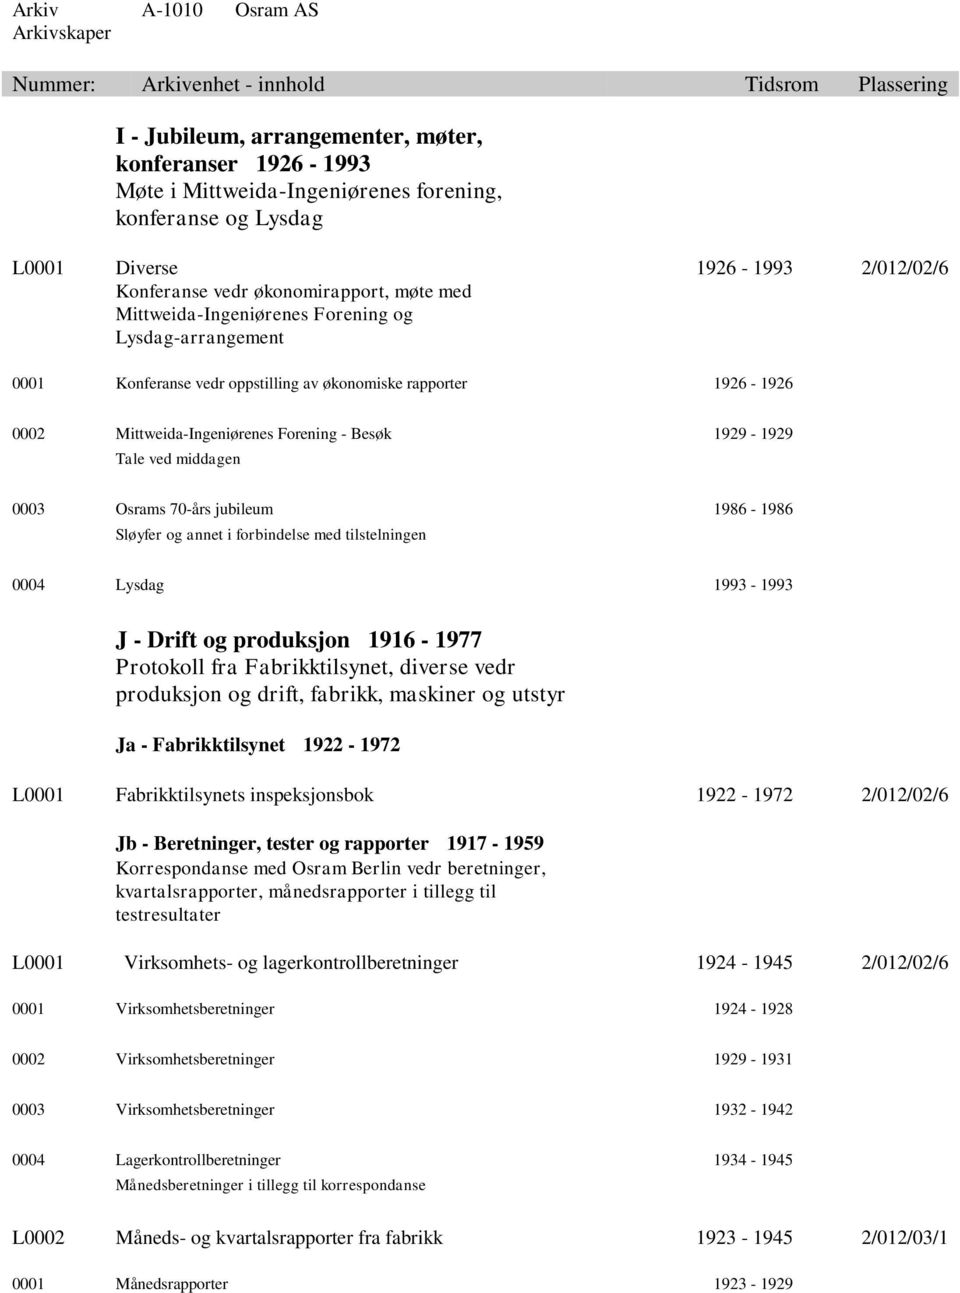 Osrams 70-års jubileum 1986-1986 Sløyfer og annet i forbindelse med tilstelningen 0004 Lysdag 1993-1993 J - Drift og produksjon 1916-1977 Protokoll fra Fabrikktilsynet, diverse vedr produksjon og